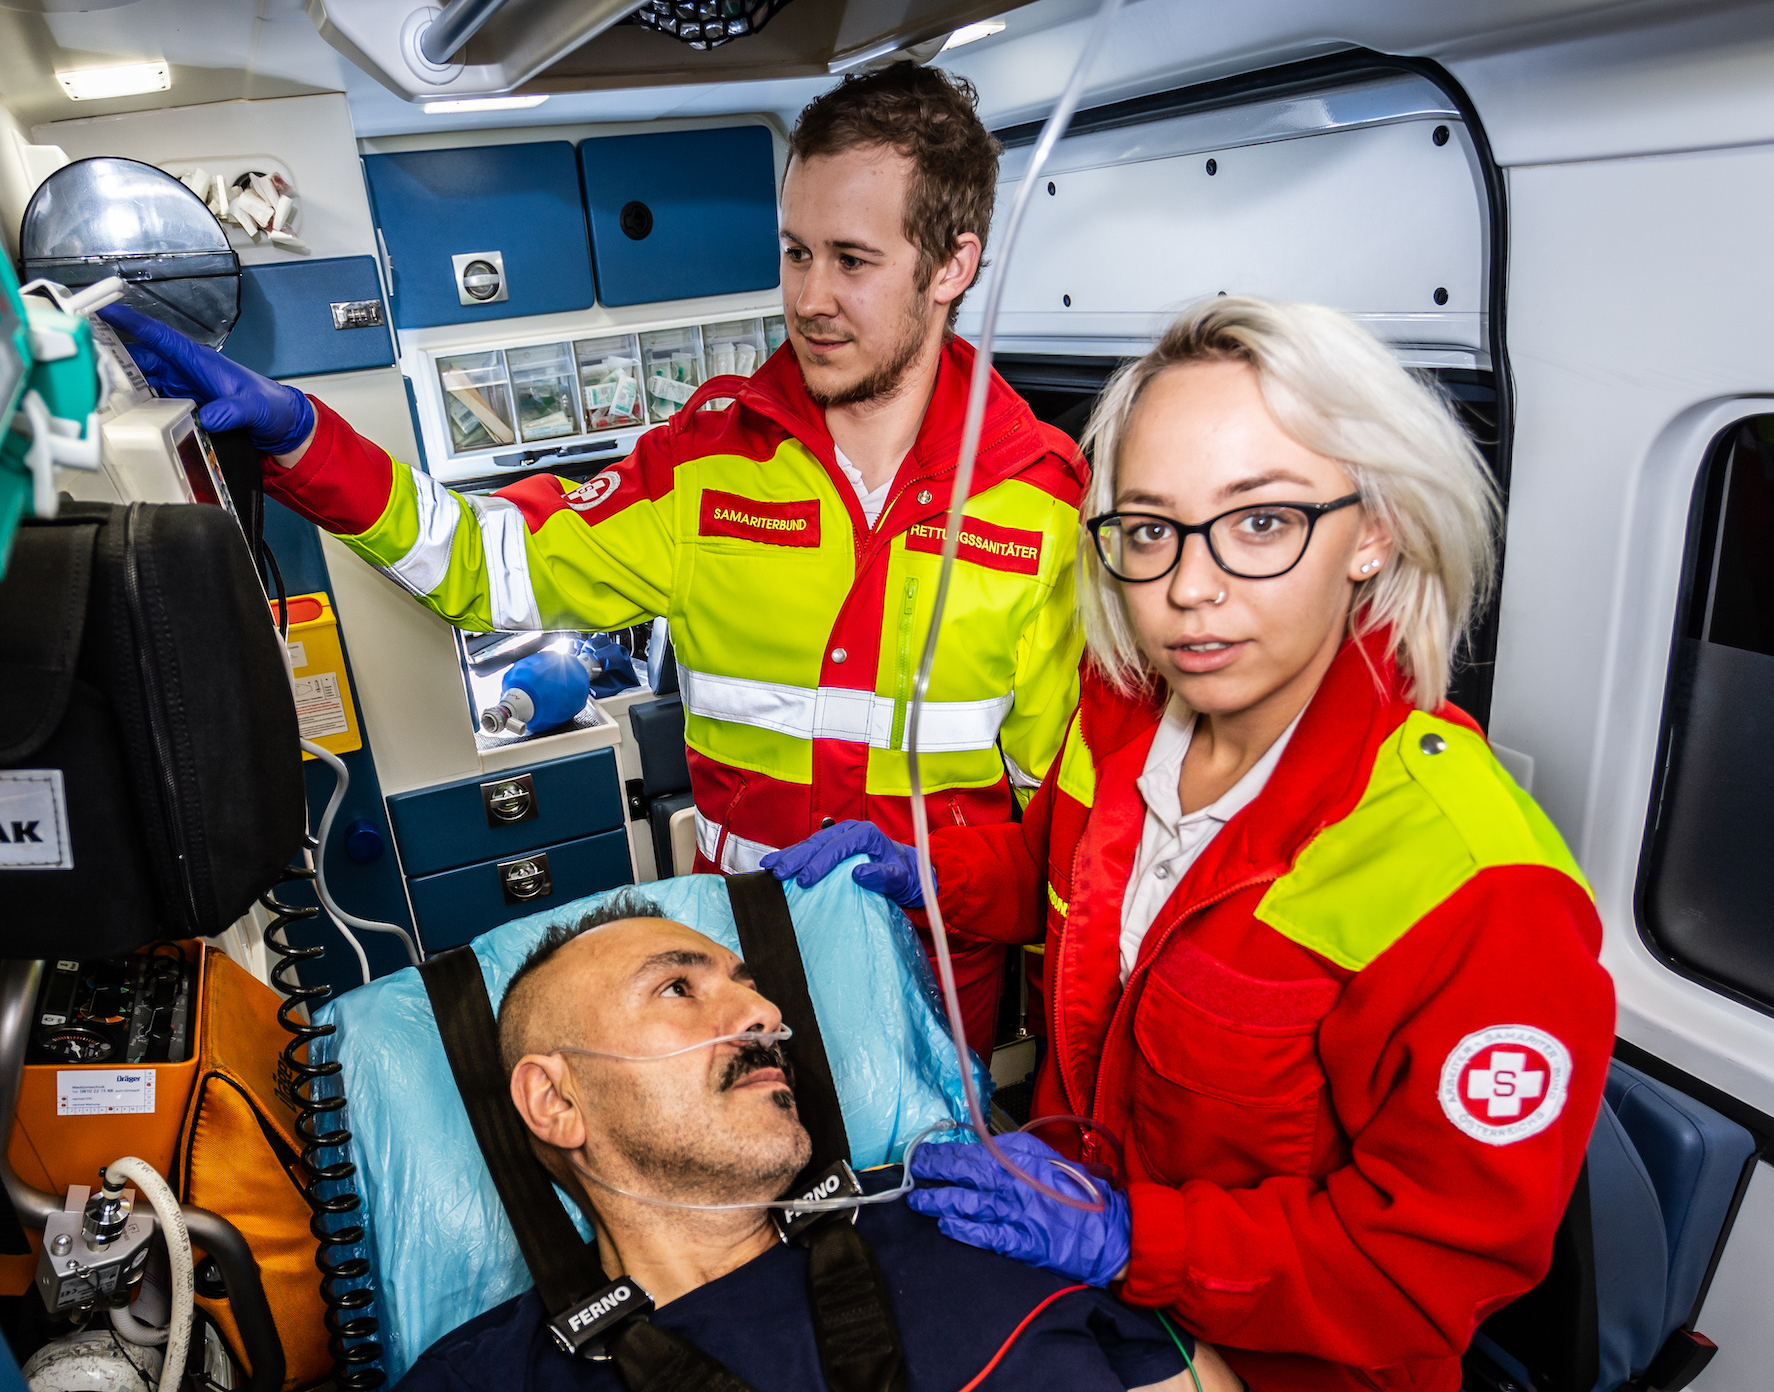 Rettungssanitäterin mit Patienten, Kollege im Hintergrund